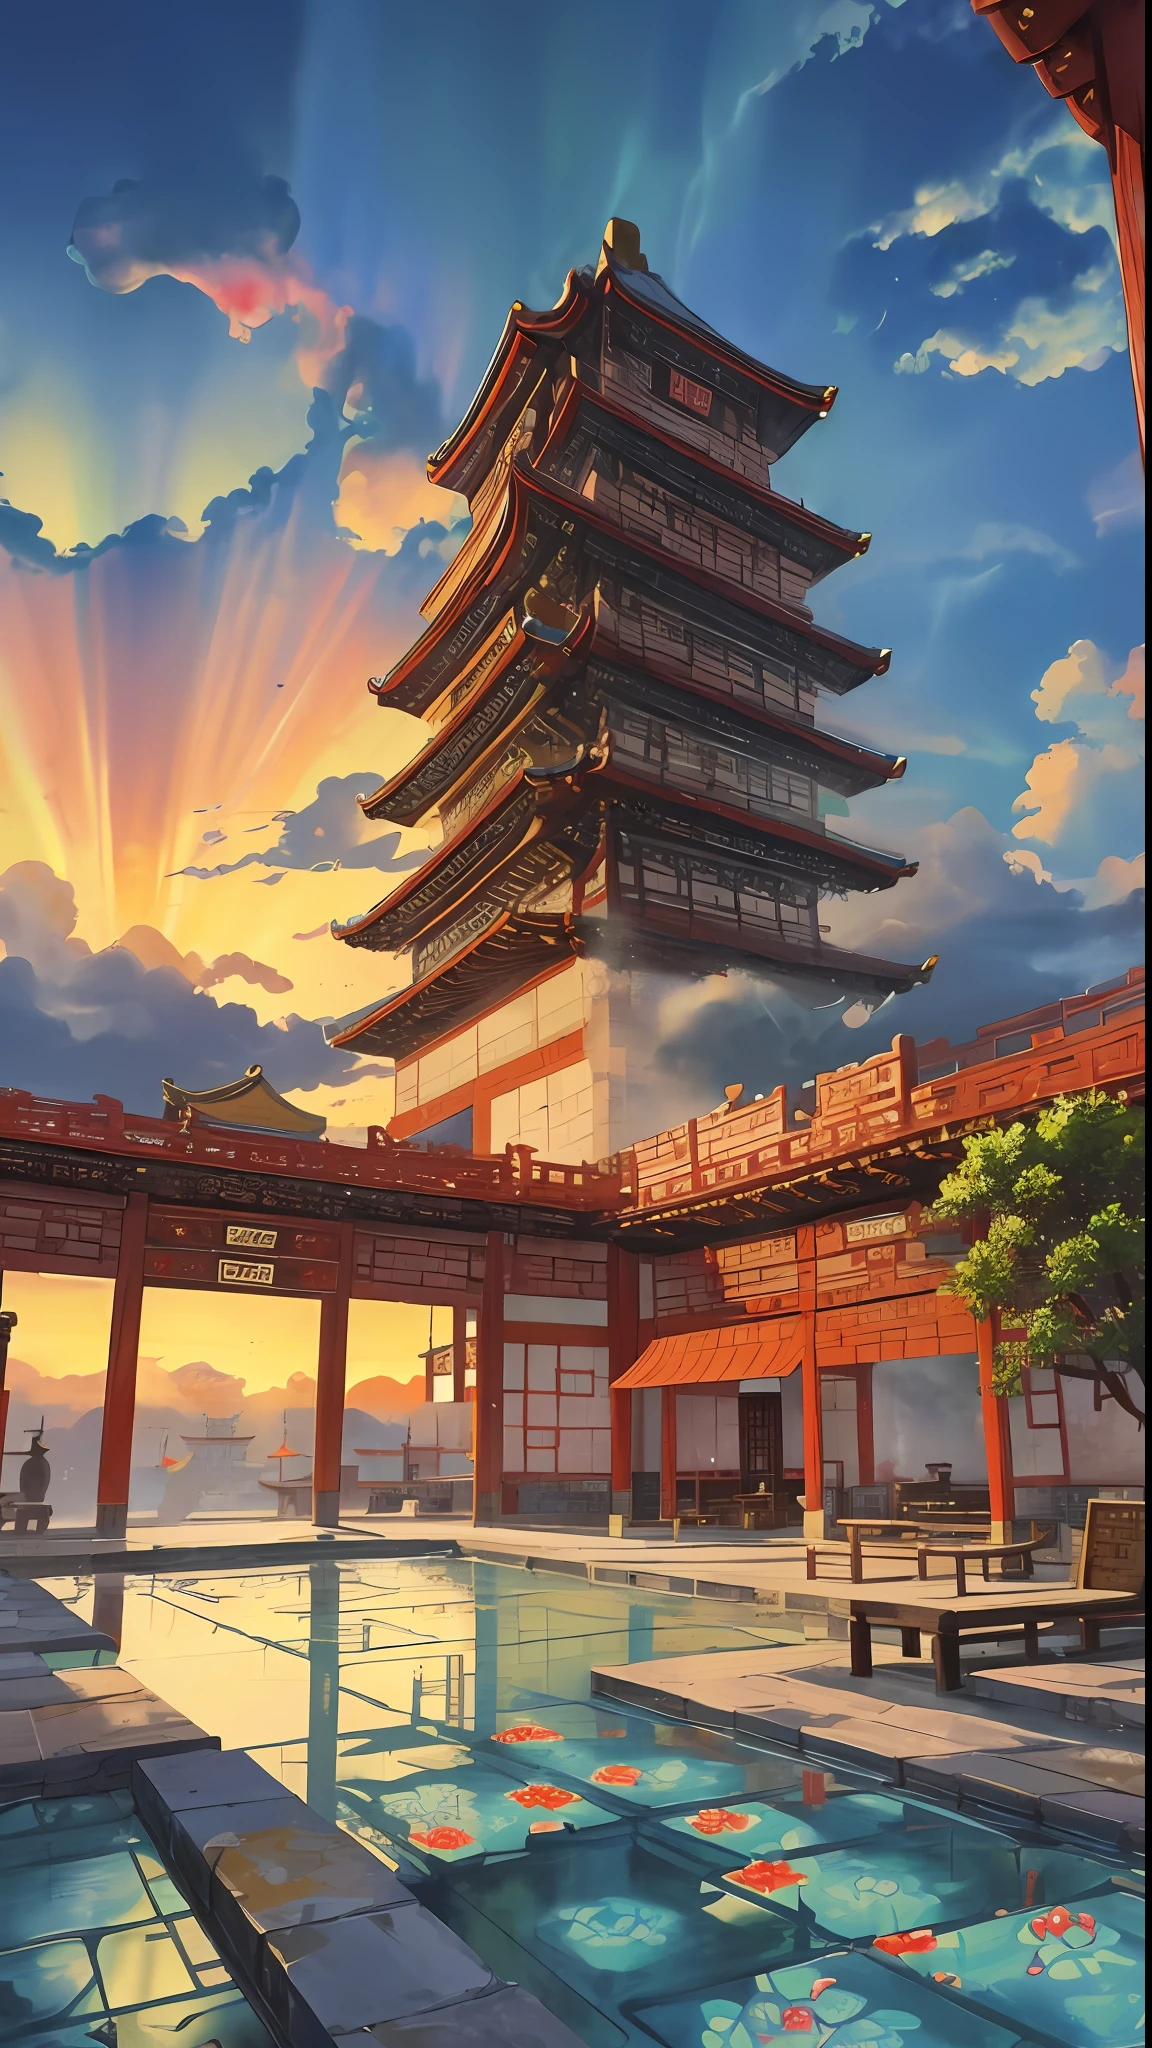 Сцена игры, древний китайский дворец расположен над облаками, Окруженный облаками и туманом, величественный, глазурованная плитка, разноцветные лучи света, ((color чернила)),((splash чернила)),((splash чернила) чернила}) ), шедевр, высокое качество, Утонченная графика, высокая детализация